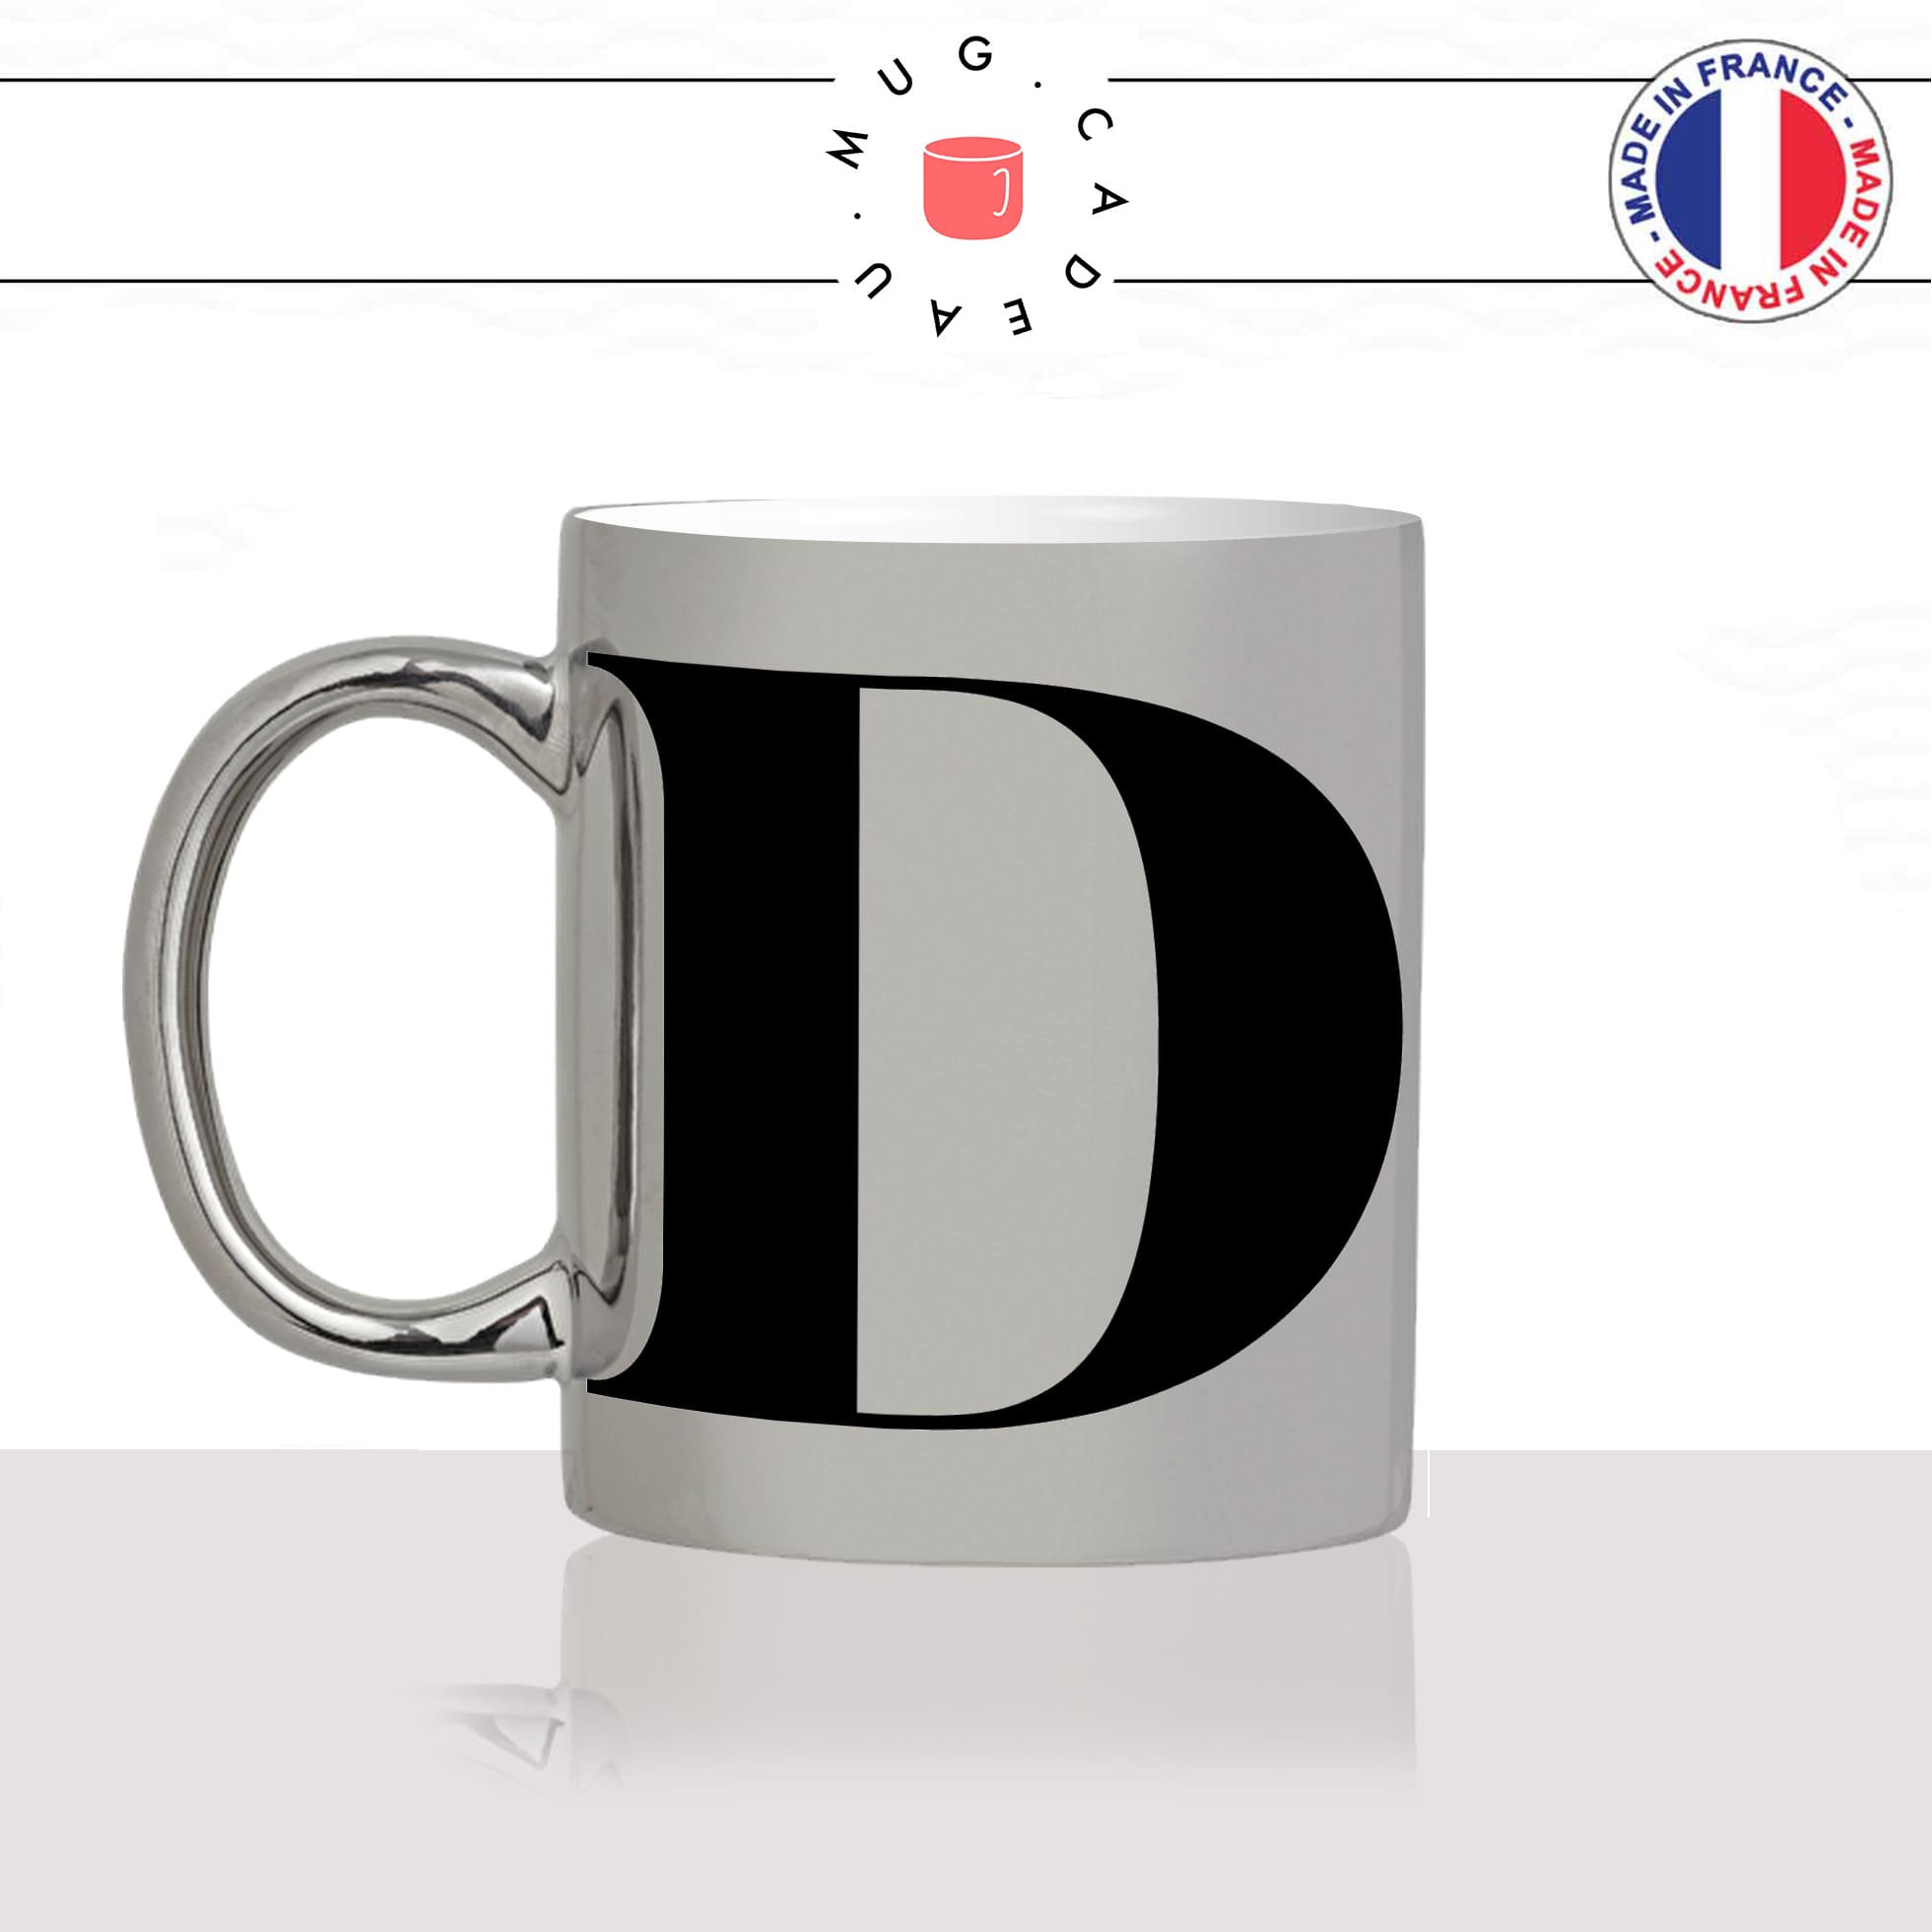 mug-tasse-argent-argenté-silver-initiale-D-dorine-dea-dylan-dydy-majuscule-lettre-collegue-original-idée-cadeau-fun-cool-café-thé